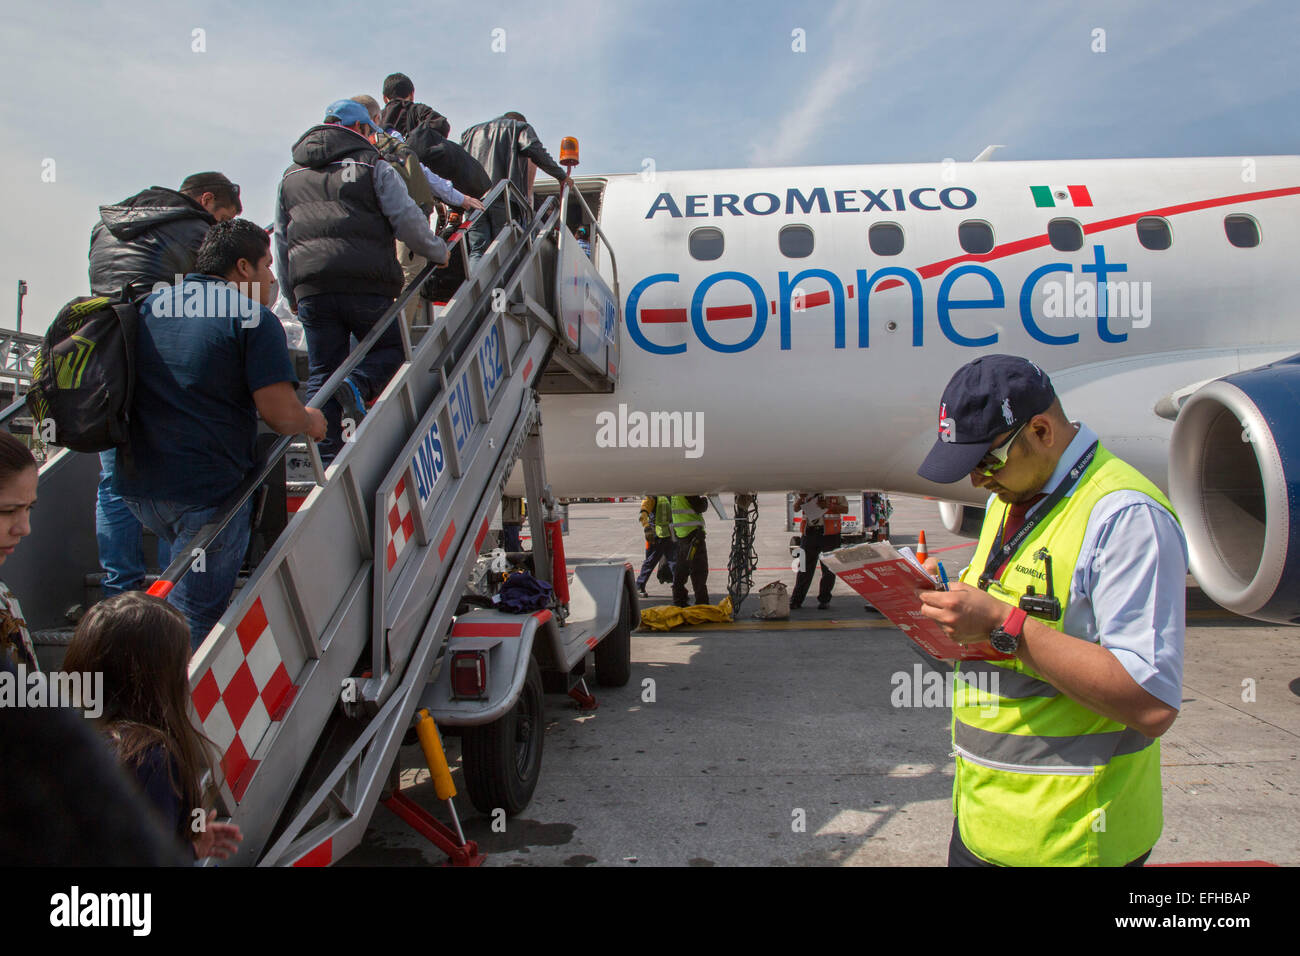 Mexiko-Stadt, Mexiko - Passagiere Board ein AeroMexico Connect-Flugzeug auf dem Flughafen von Mexiko-Stadt für einen Flug nach Oaxaca. Stockfoto